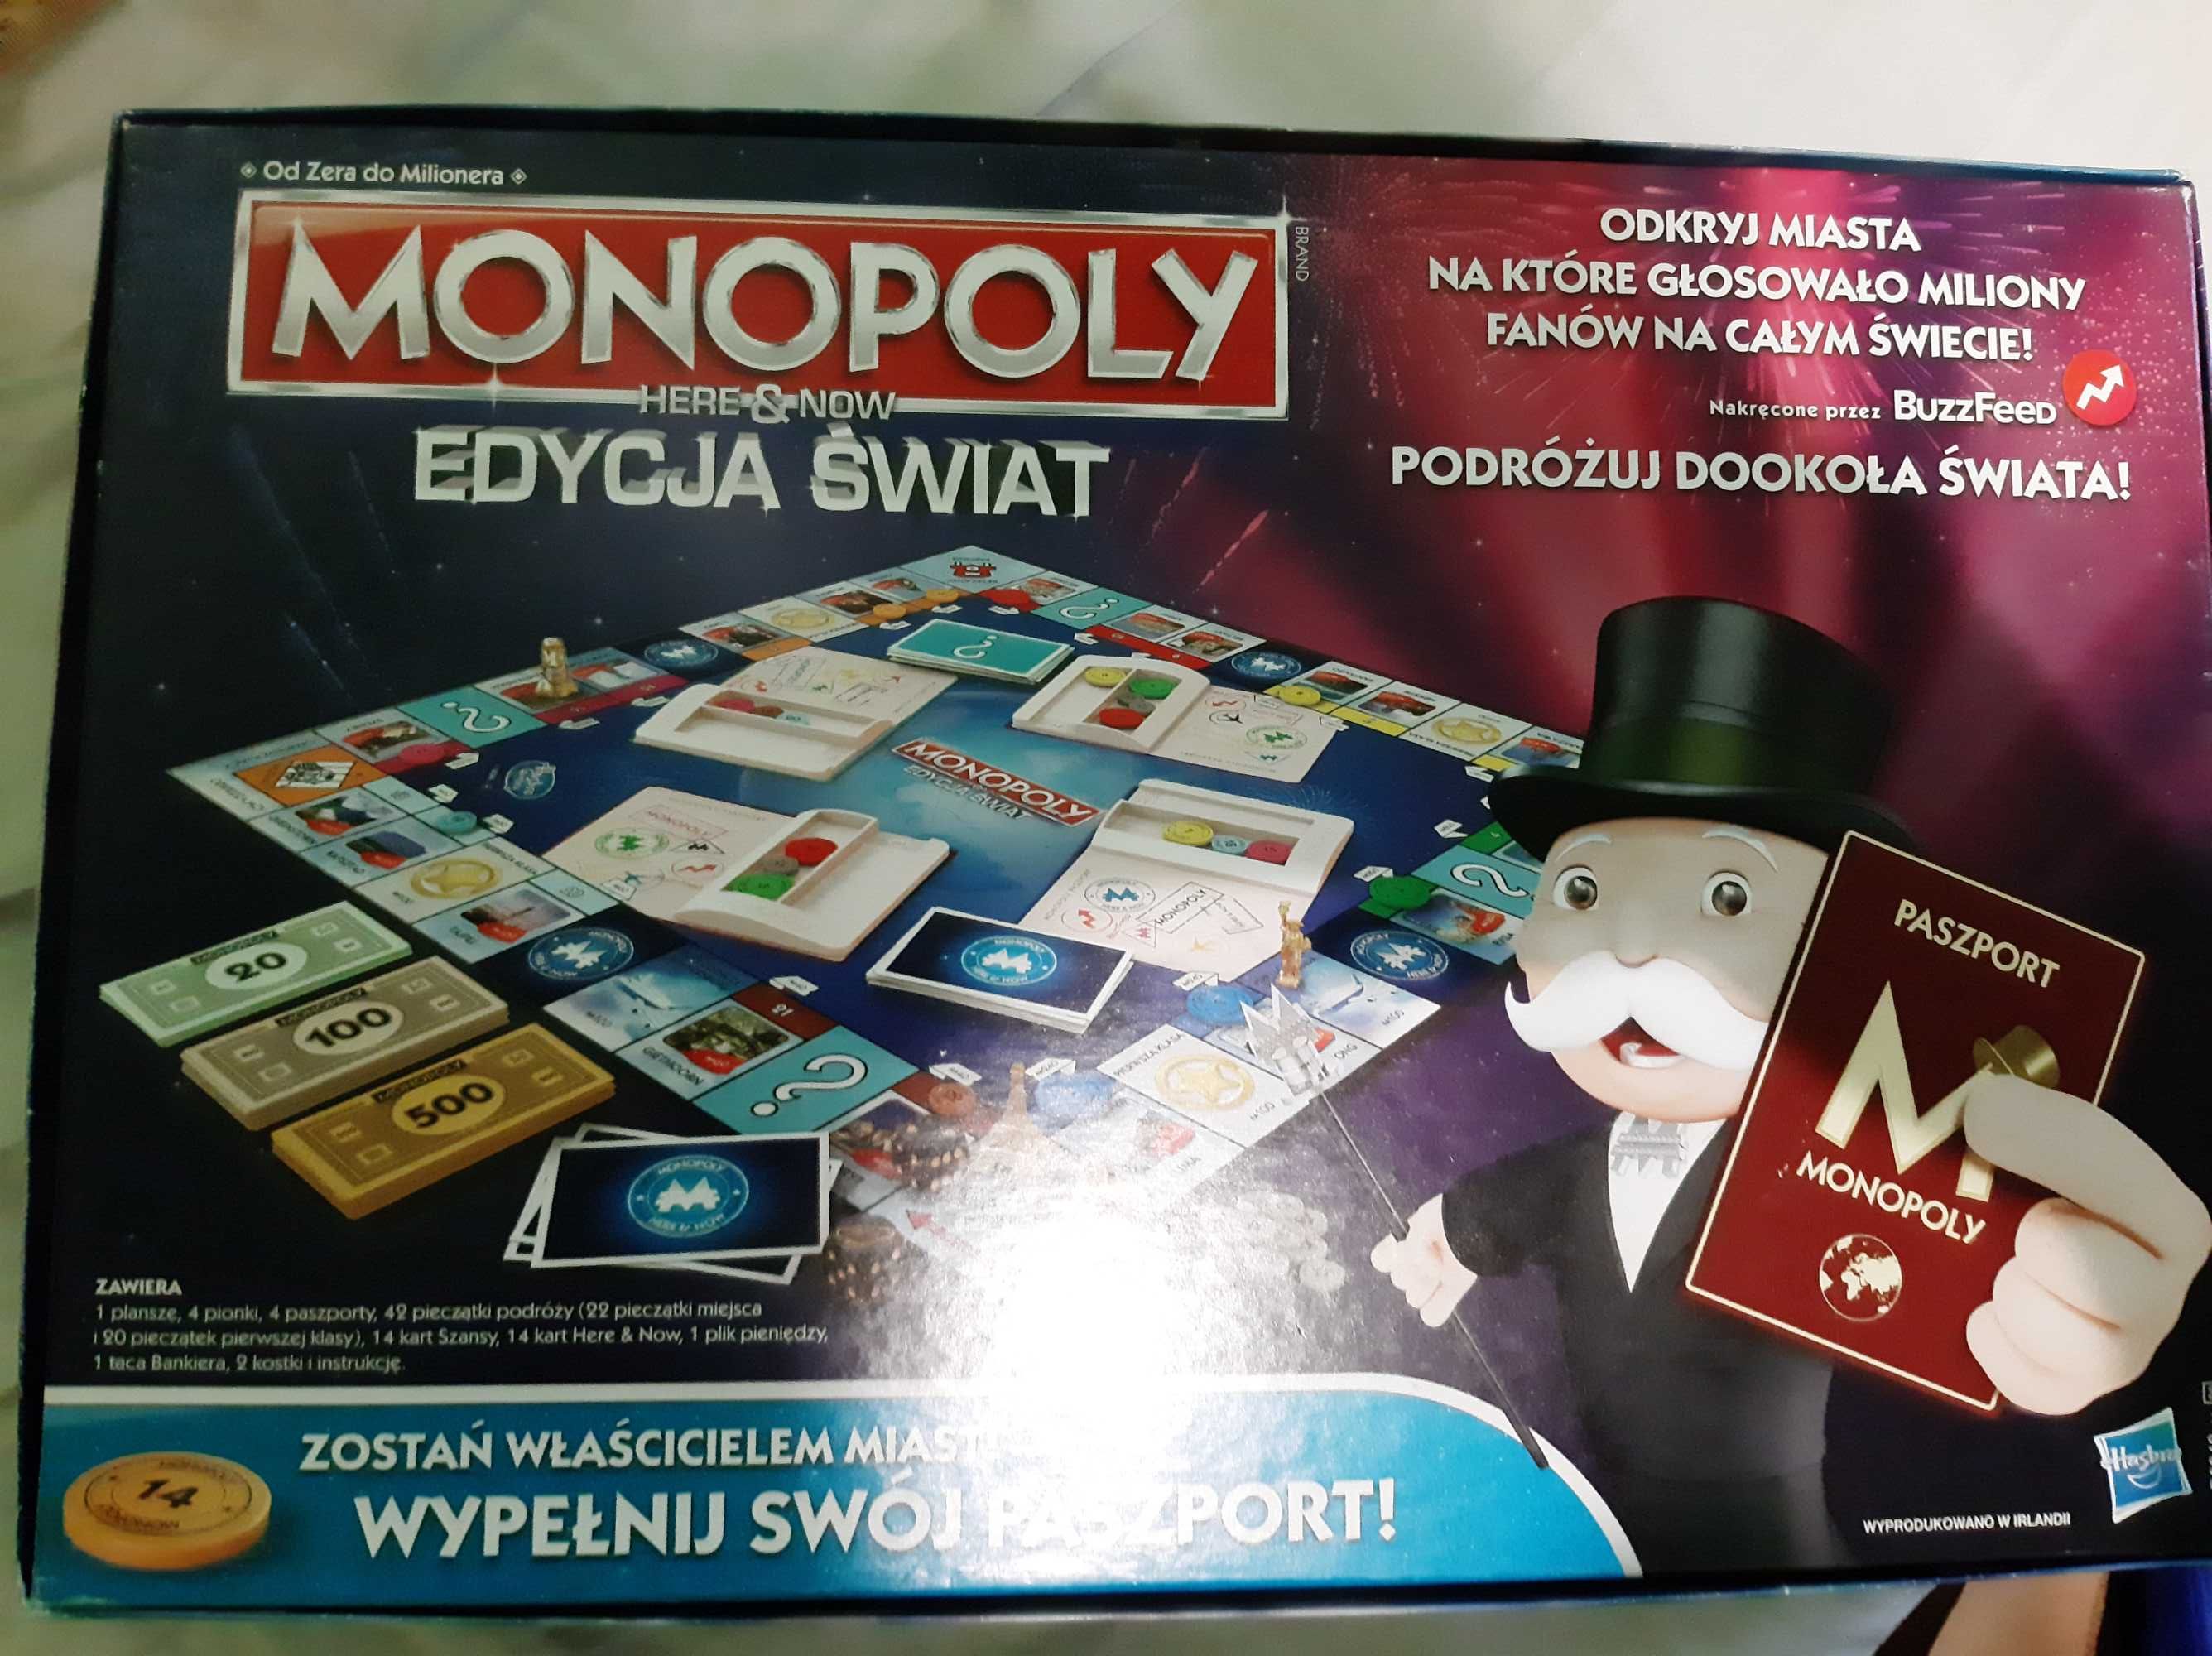 Monopoly edycja świat